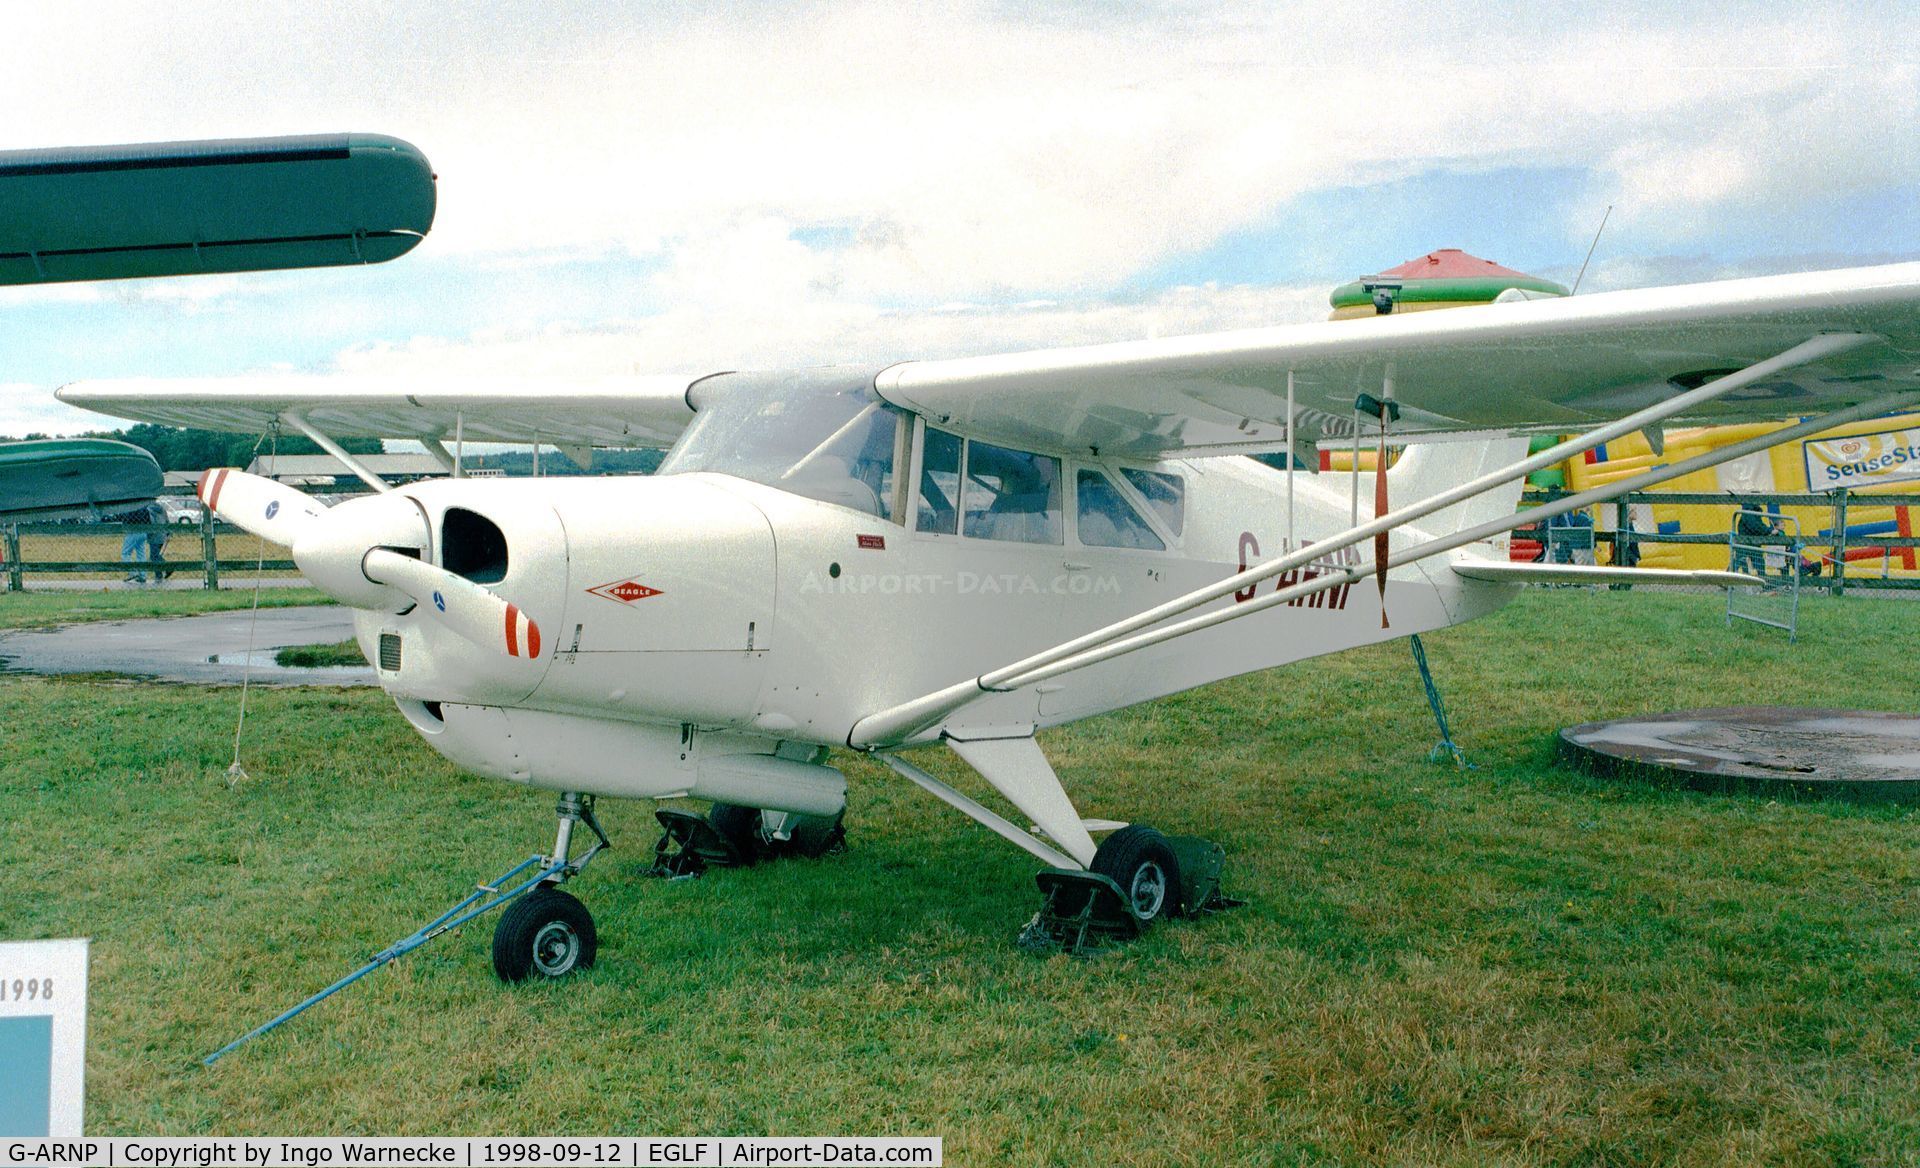 G-ARNP, 1961 Beagle A-109 Airdale C/N B.503, Beagle A.109 Airedale at Farnborough International 1998